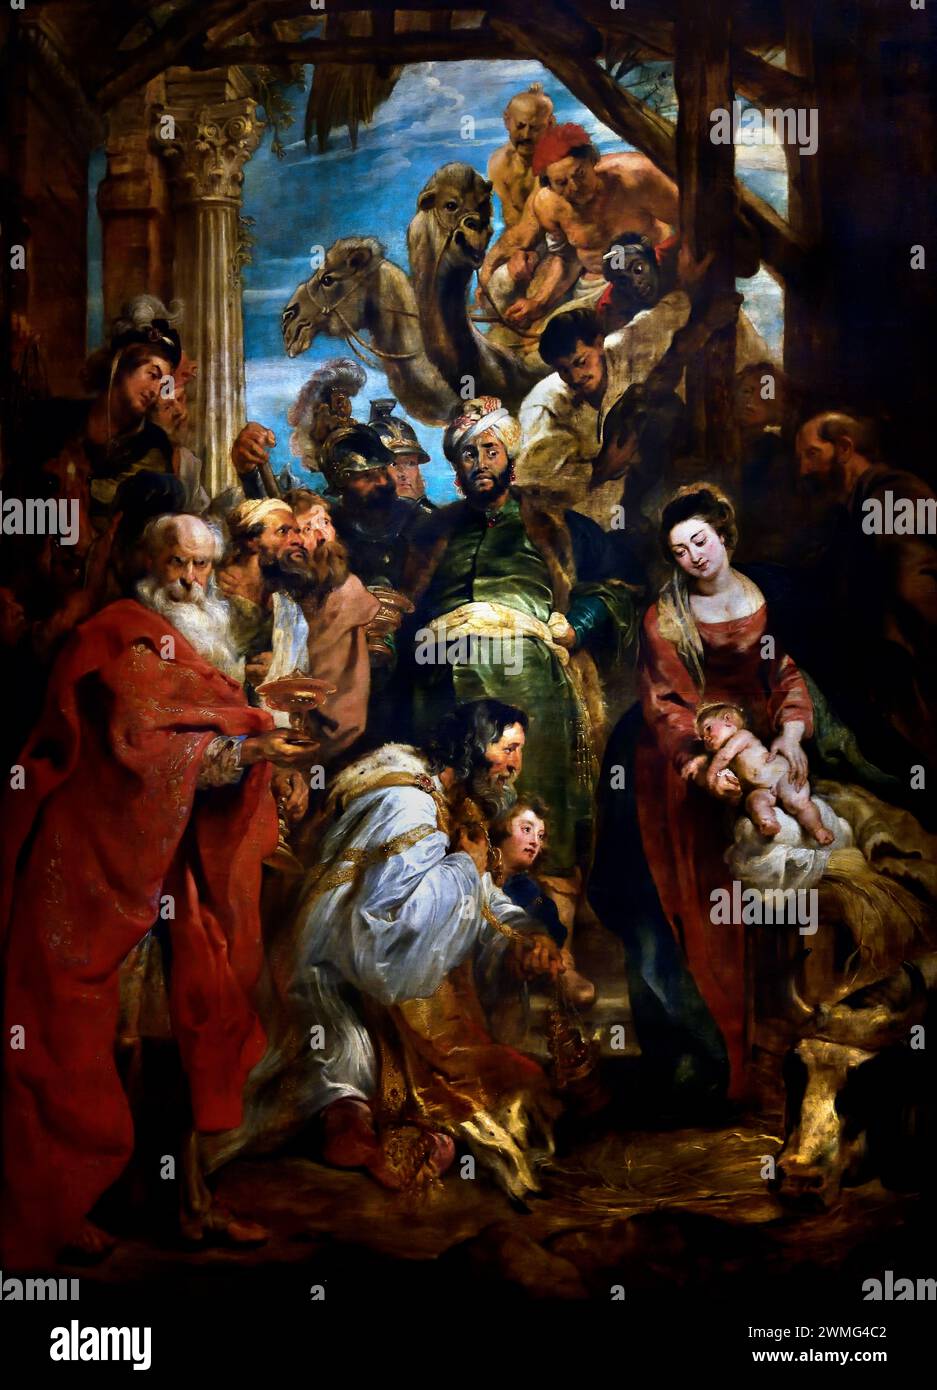 L'Adoration des Mages par Pierre Paul Rubens. (1577-1640). Artiste et diplomate flamand, flamand, Musée royal baroque des Beaux-Arts, Anvers, Belgique, belge. Adoration, Mages, Adoration des Rois, Nativité de Jésus, trois Mages, représentés comme des rois, trouvèrent Jésus en suivant une étoile, déposèrent devant lui des dons d'or, d'encens et de myrrhe, et l'adorèrent Banque D'Images